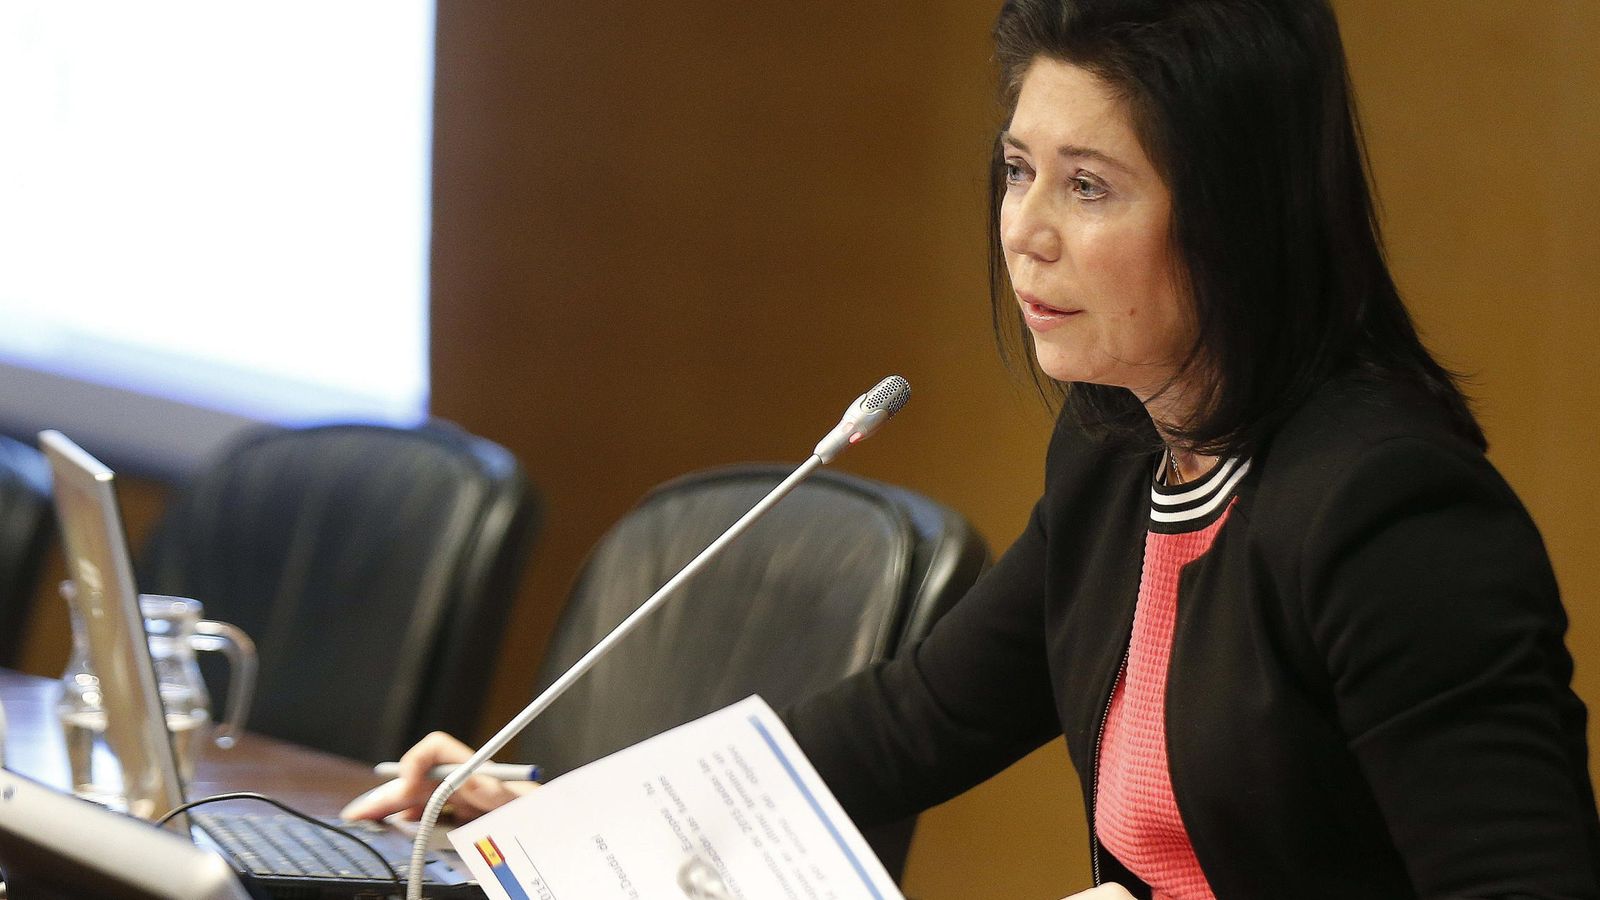 Foto: La secretaria general del Tesoro, Rosa Sánchez-Yebra